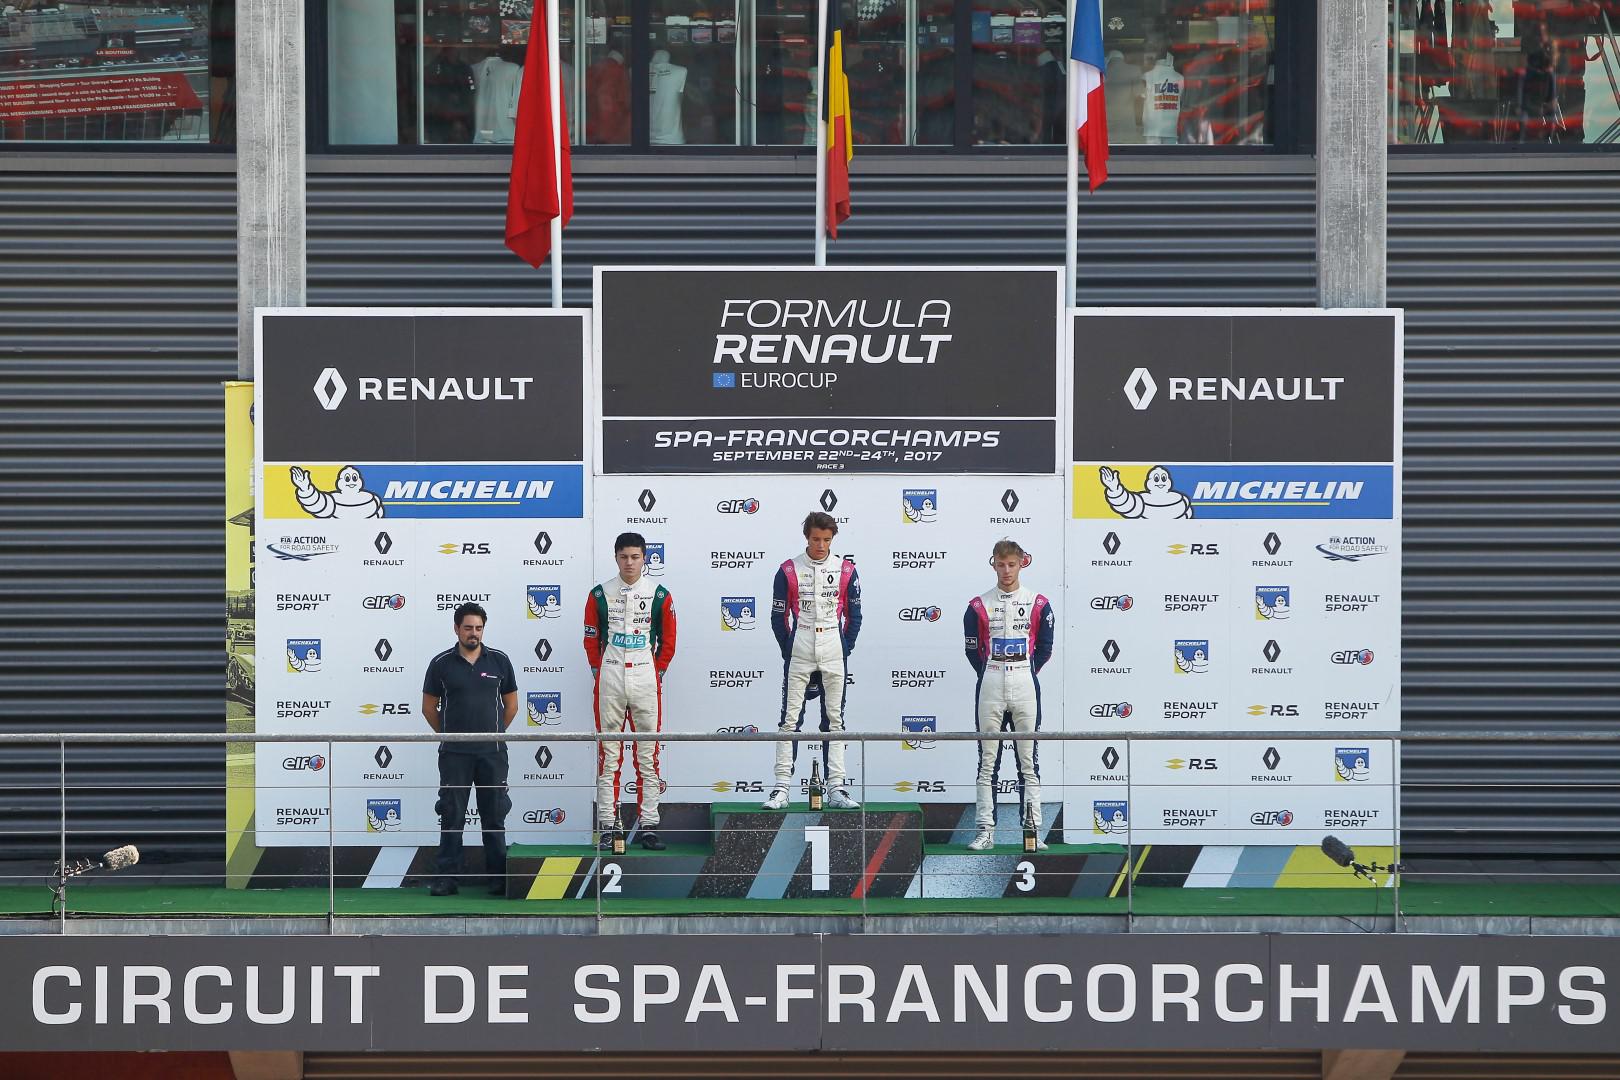 2eme-au-championnat-le-marocain-benyahia-se-replace-dans-la-course-au-titre-nec-formule-renault-2-0-425-2.jpg